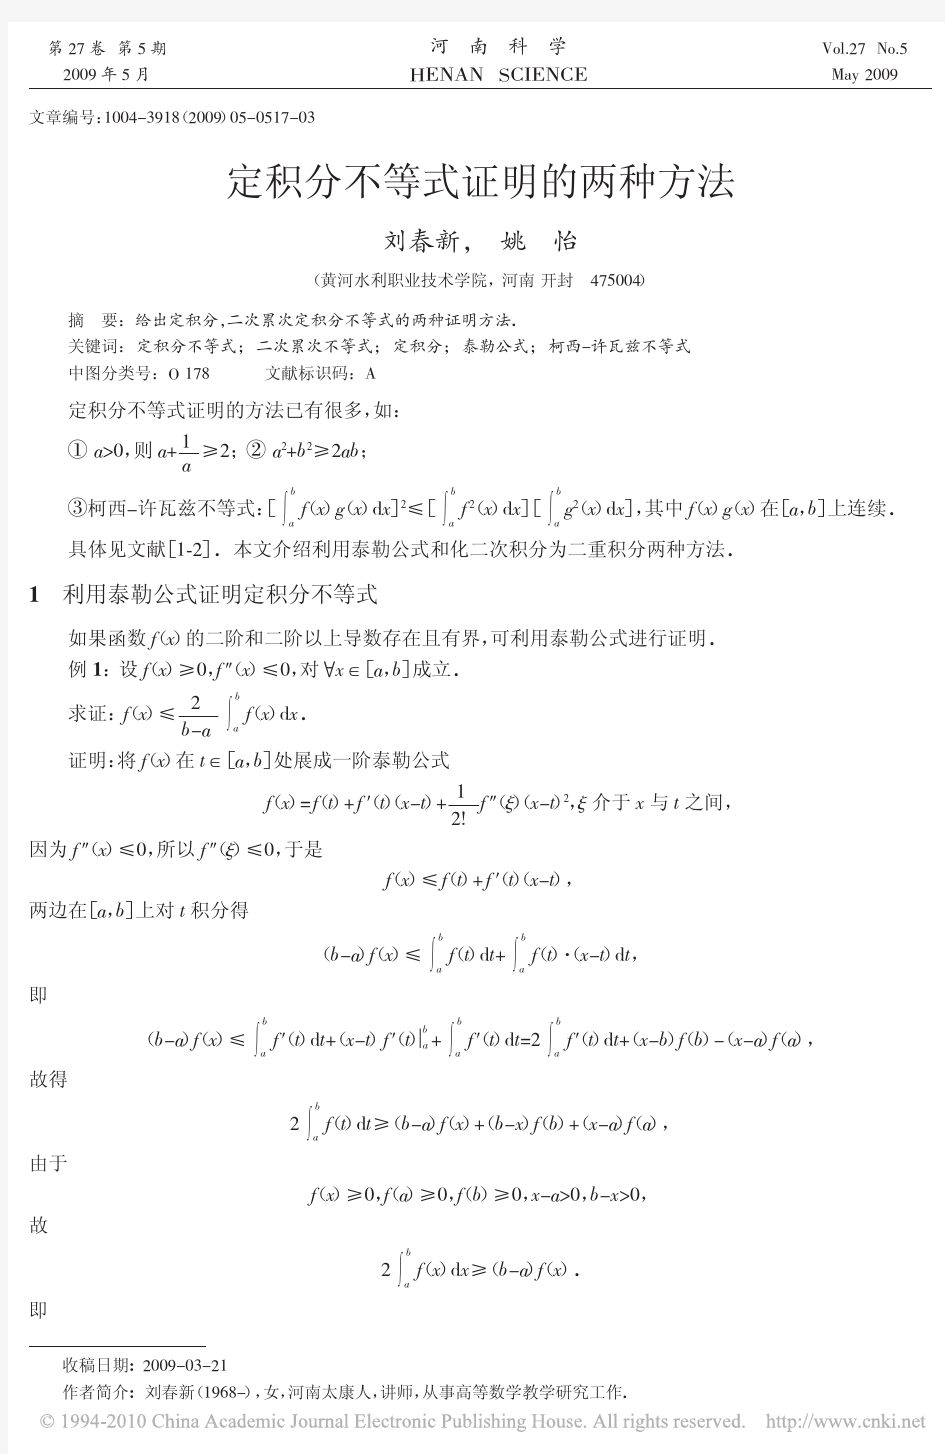 定积分不等式证明的两种方法_刘春新